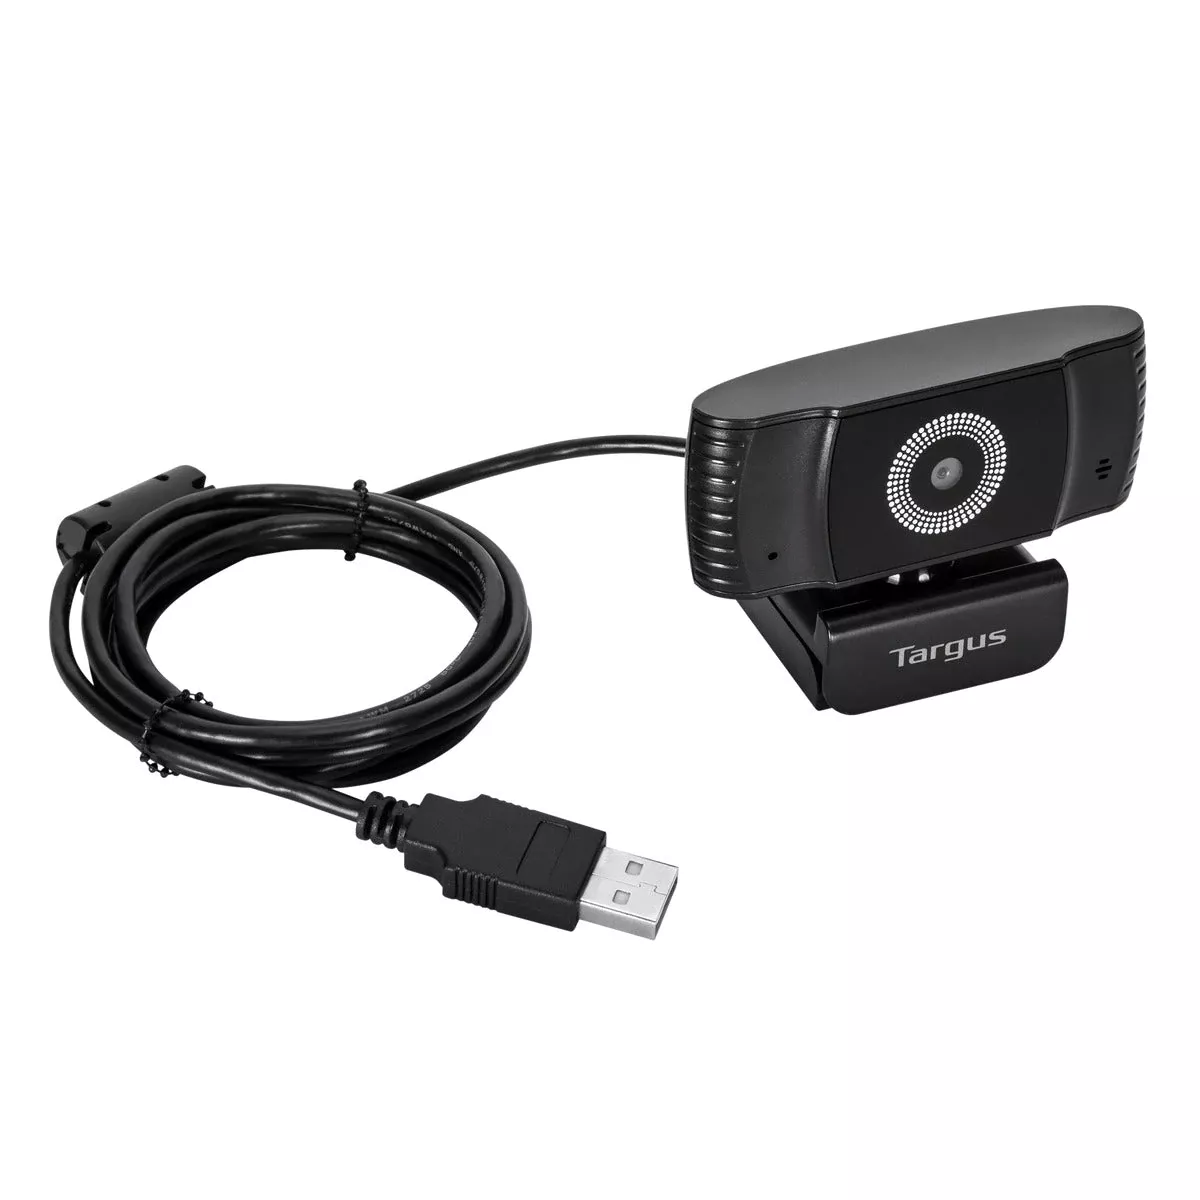 Achat TARGUS Webcam Plus Full HD 1080p Webcam with sur hello RSE - visuel 9